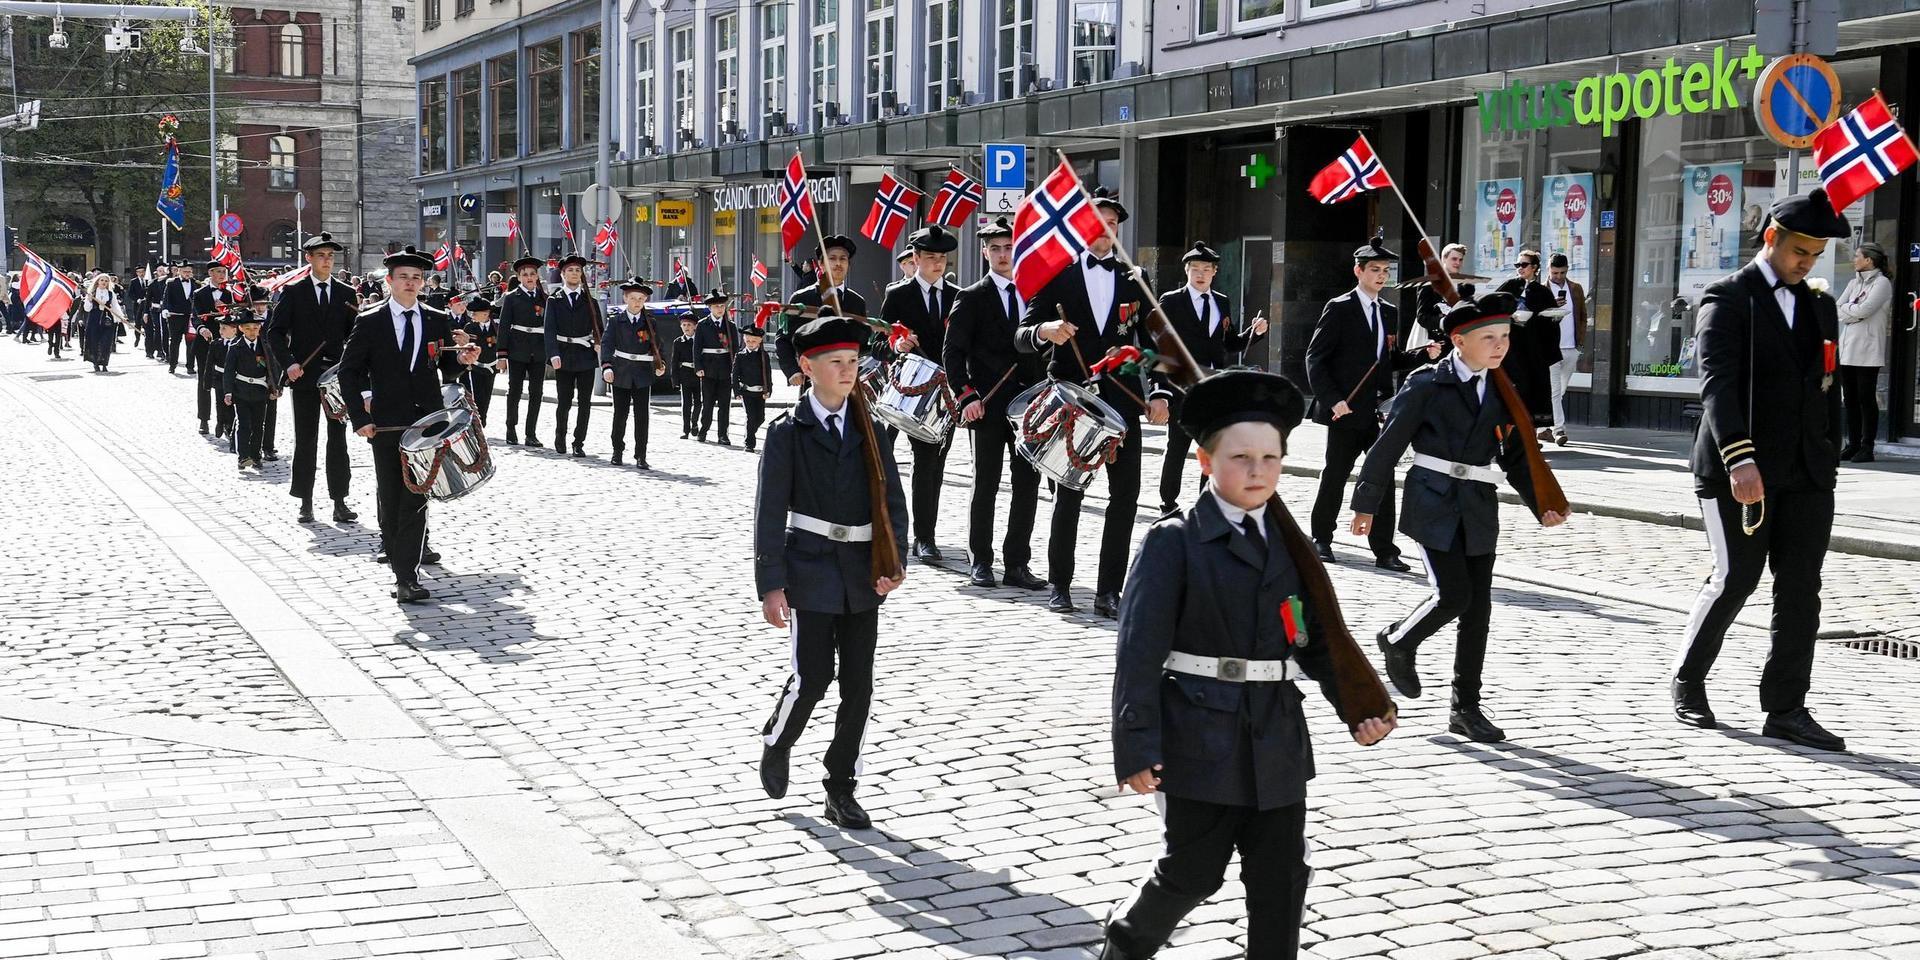 Bågkåren, eller 'Buekorpset' som det heter på norska är en traditionell barnkår som marscherar på 17 maj varje år. Så även i år, om än utan publik.